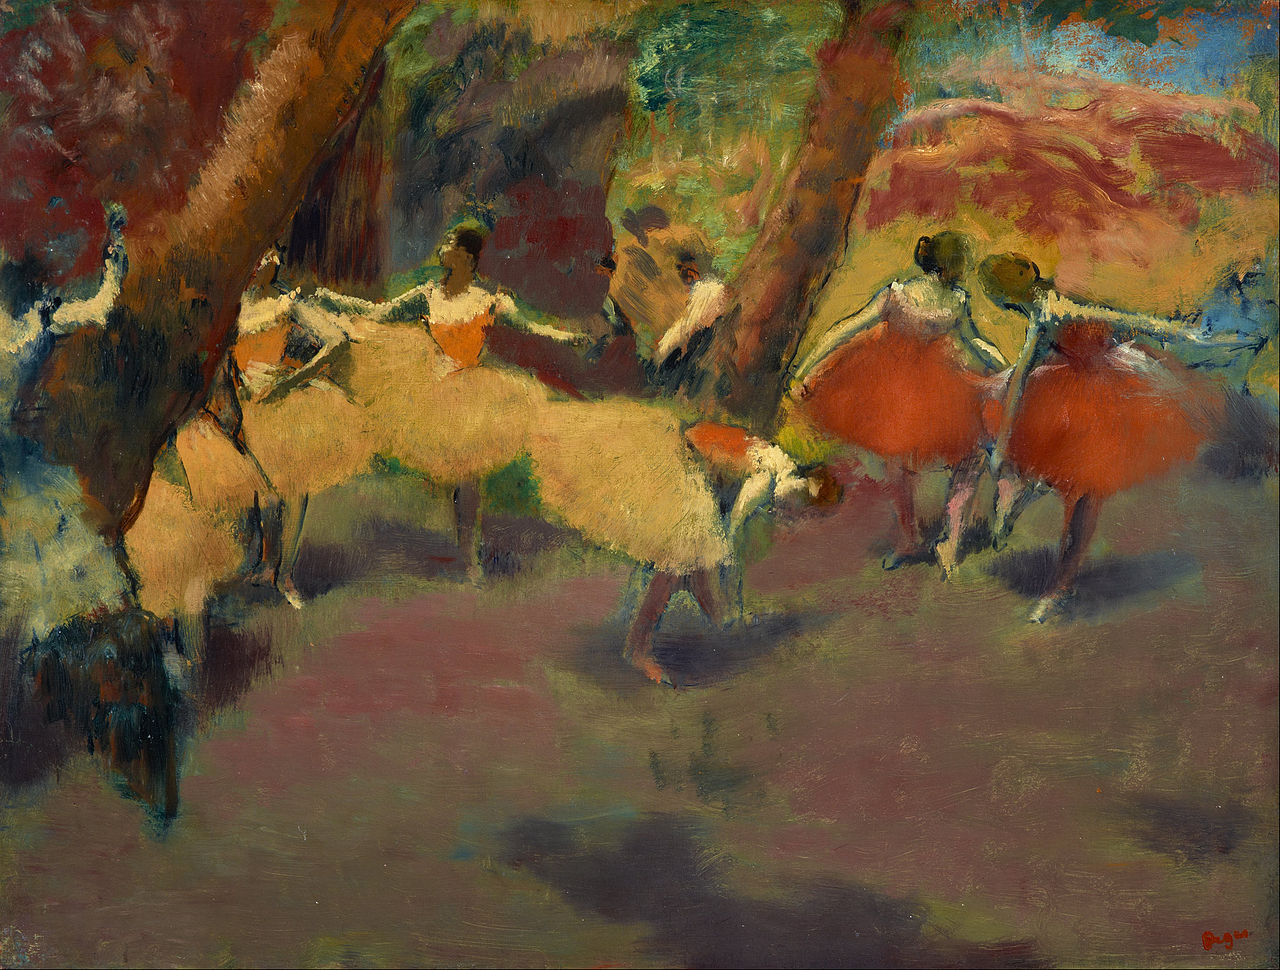 Edgar+Degas-1834-1917 (850).jpg